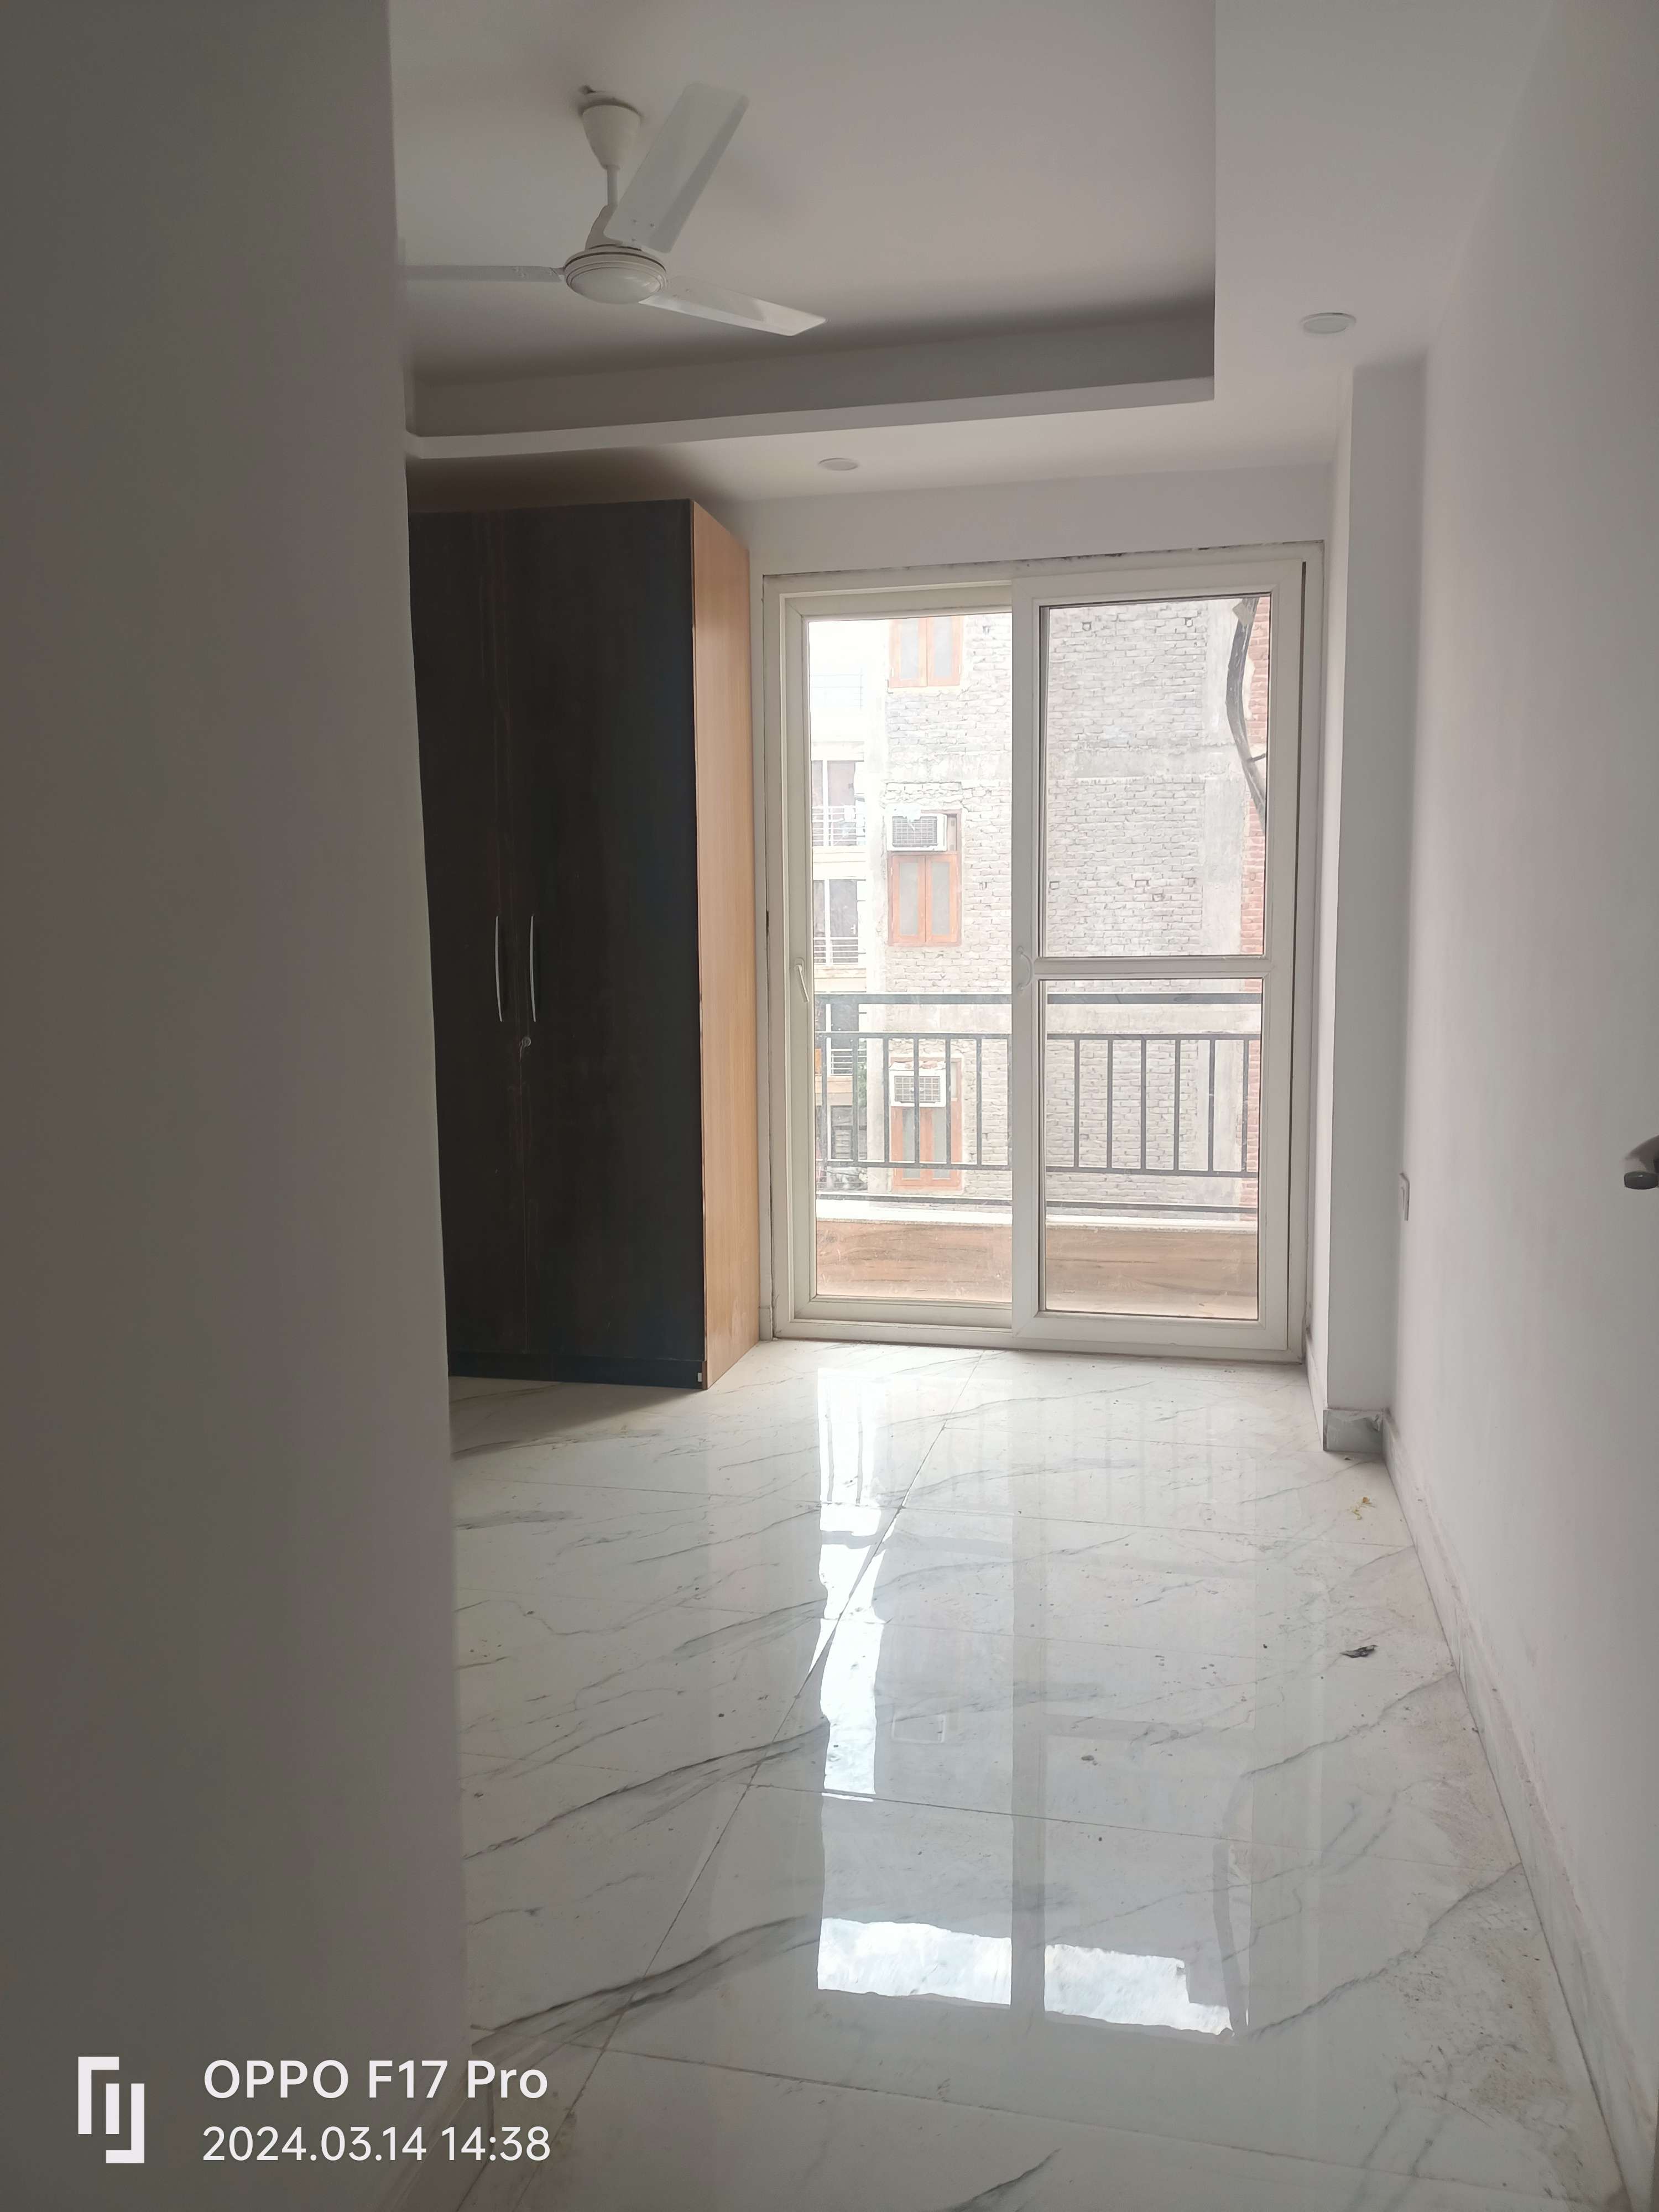 2 BHK Builder Floor For Rent in Freedom Fighters Enclave Saket Delhi 6678000